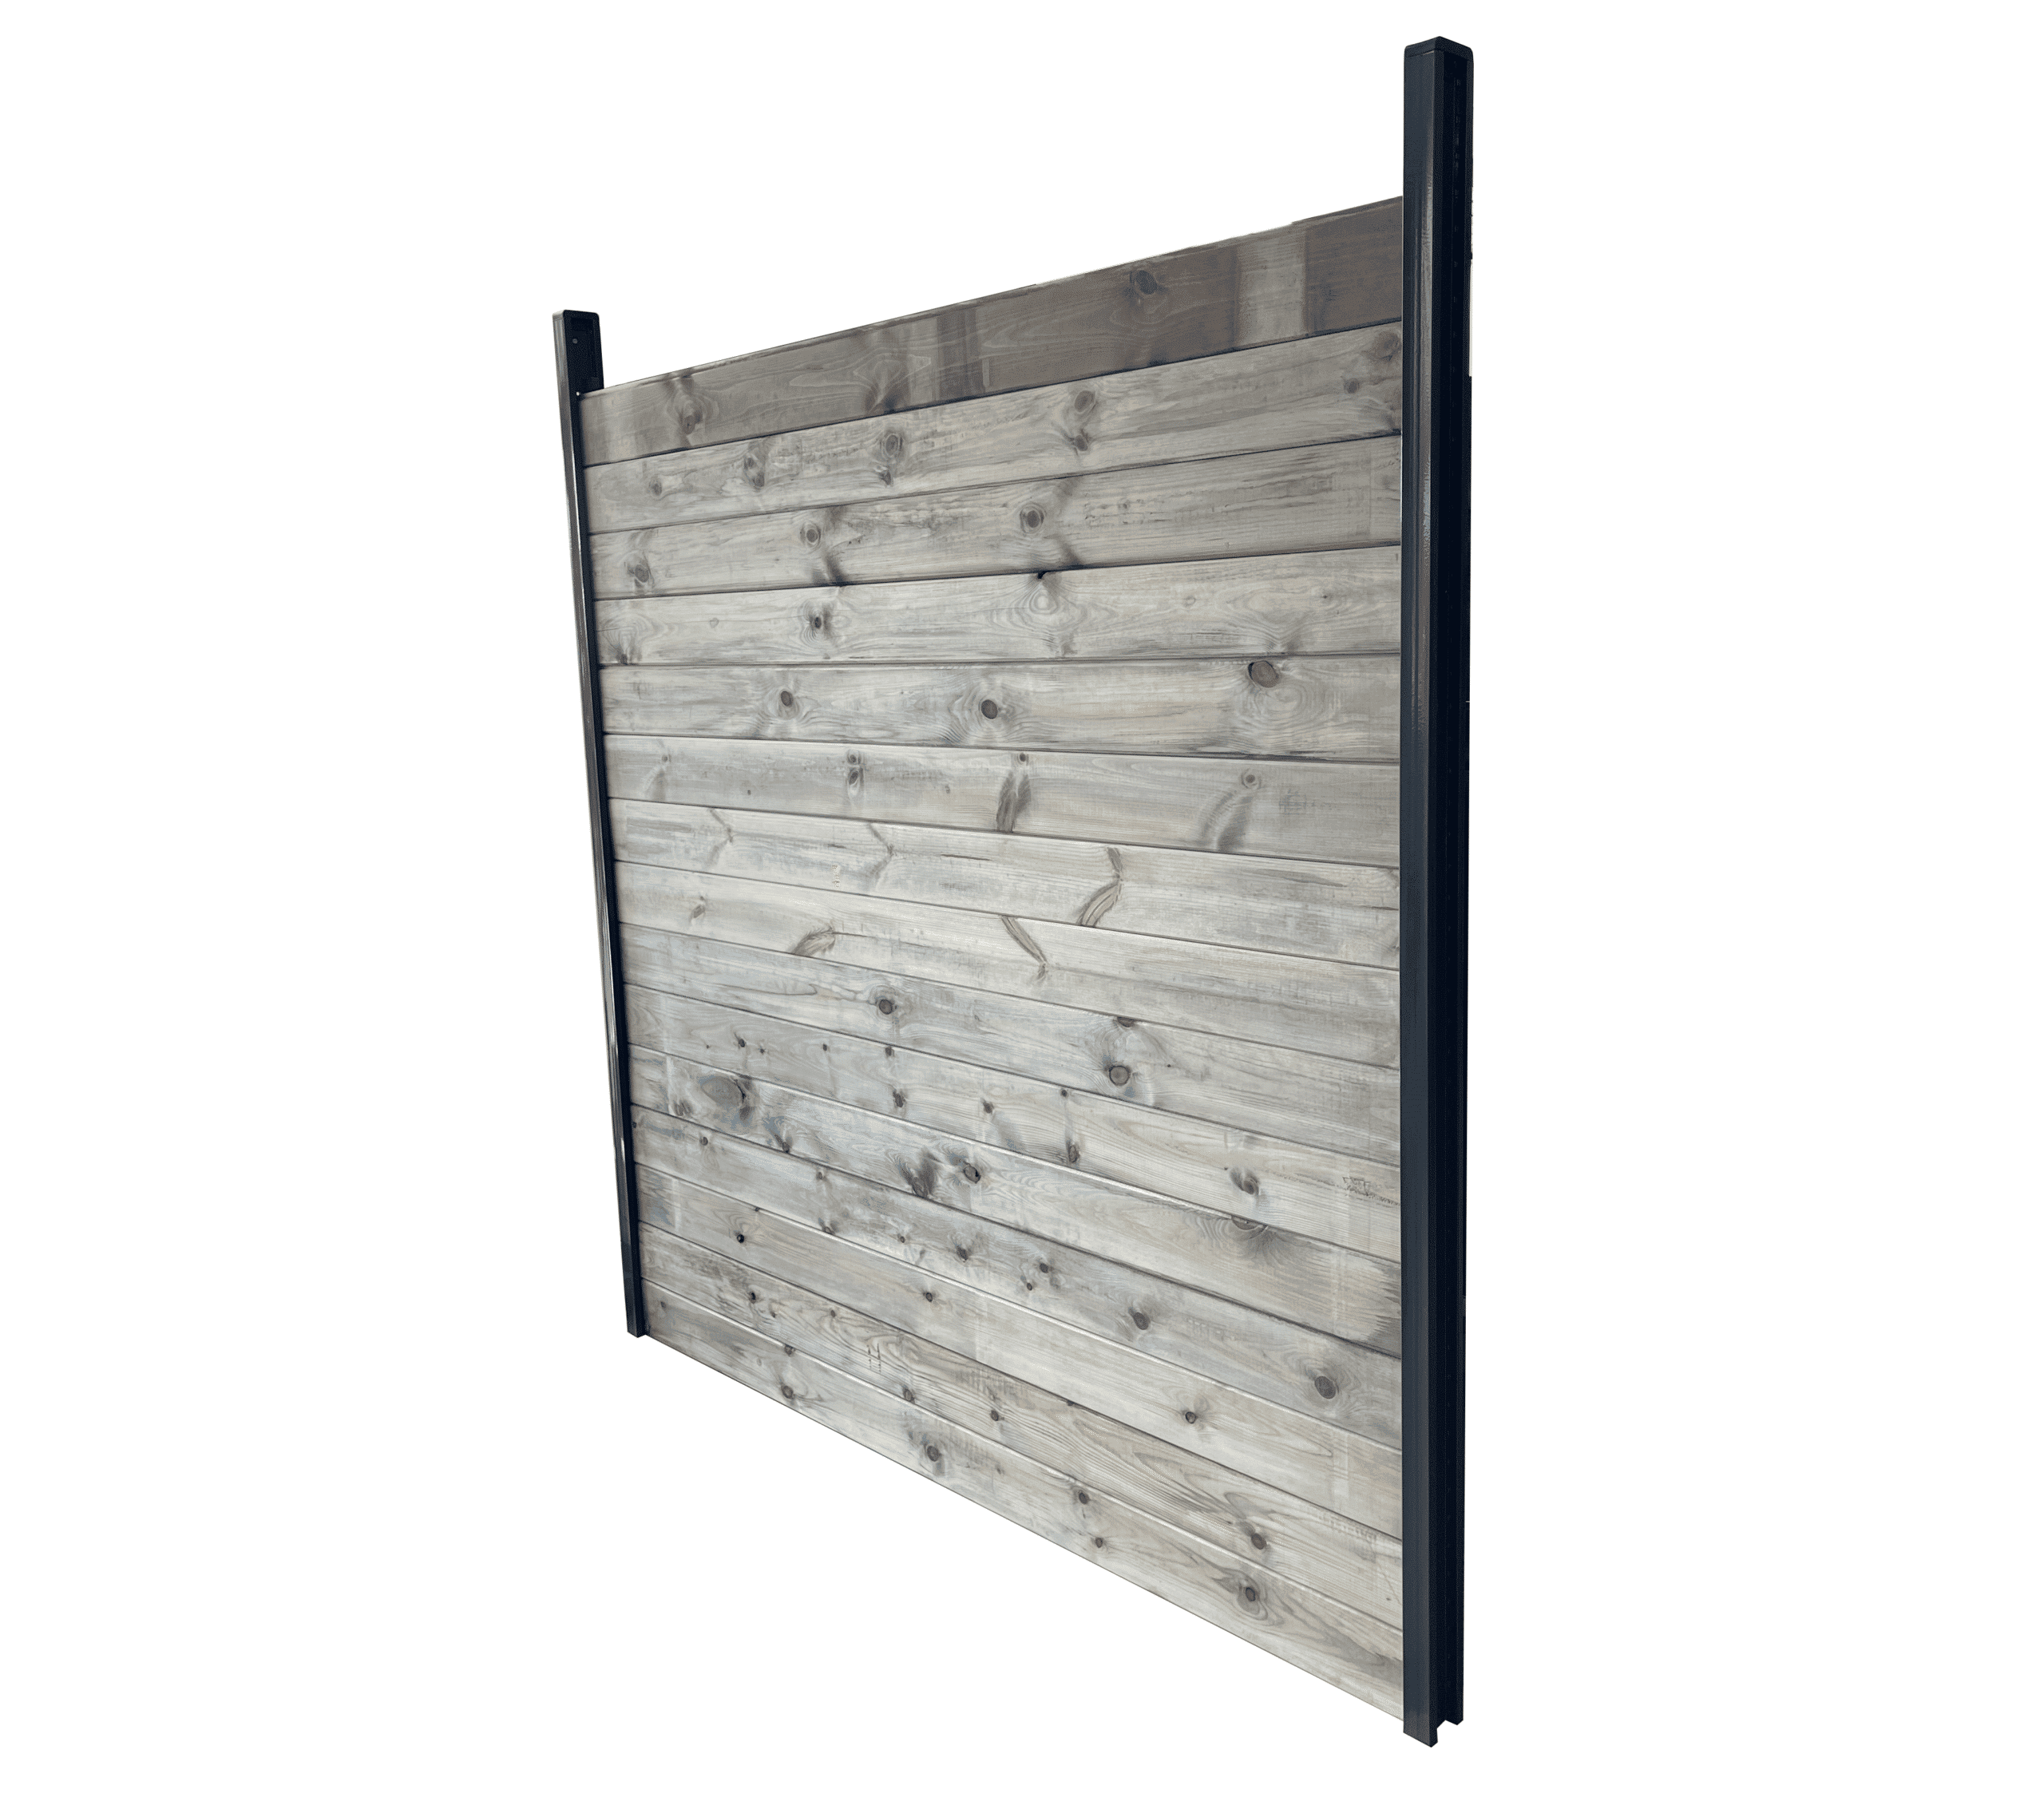 Kit clôture bois massif|4m de longueur|pin sylvestre traité autoclave gris|hauteur : 1,82m|2m entre poteaux